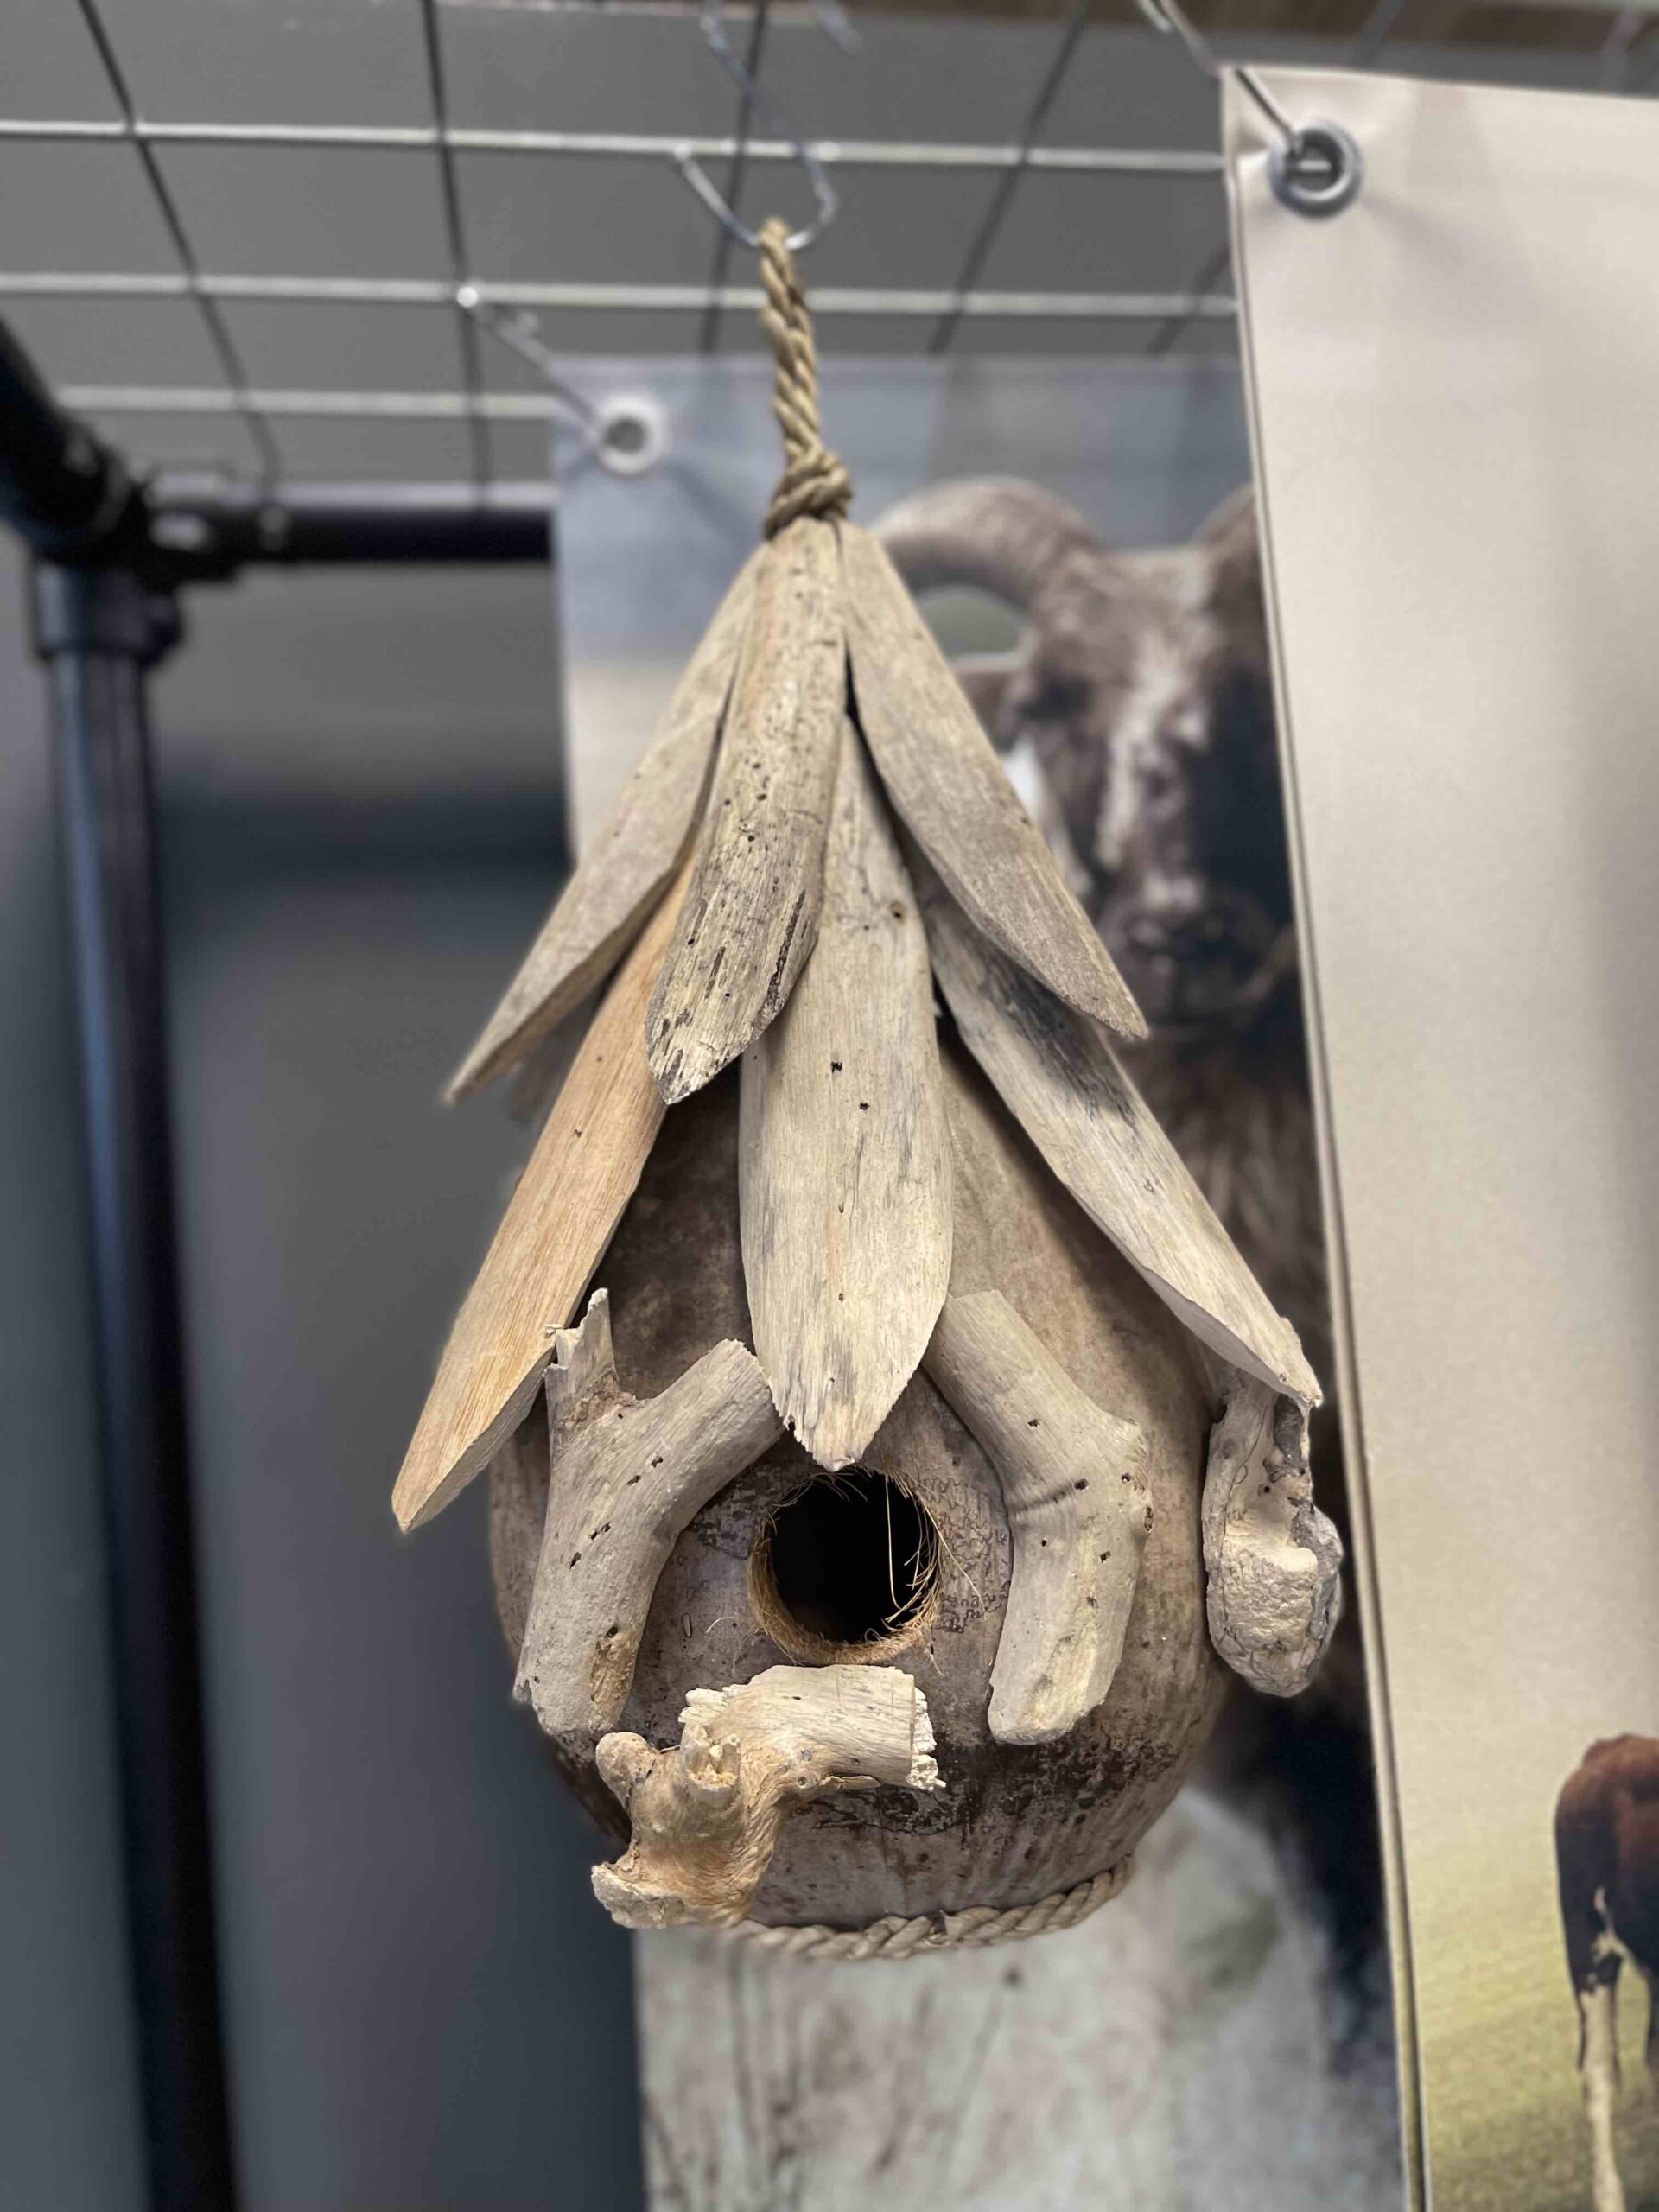 Vogelhuisje in een peer vorm gemaakt van drijfhout.